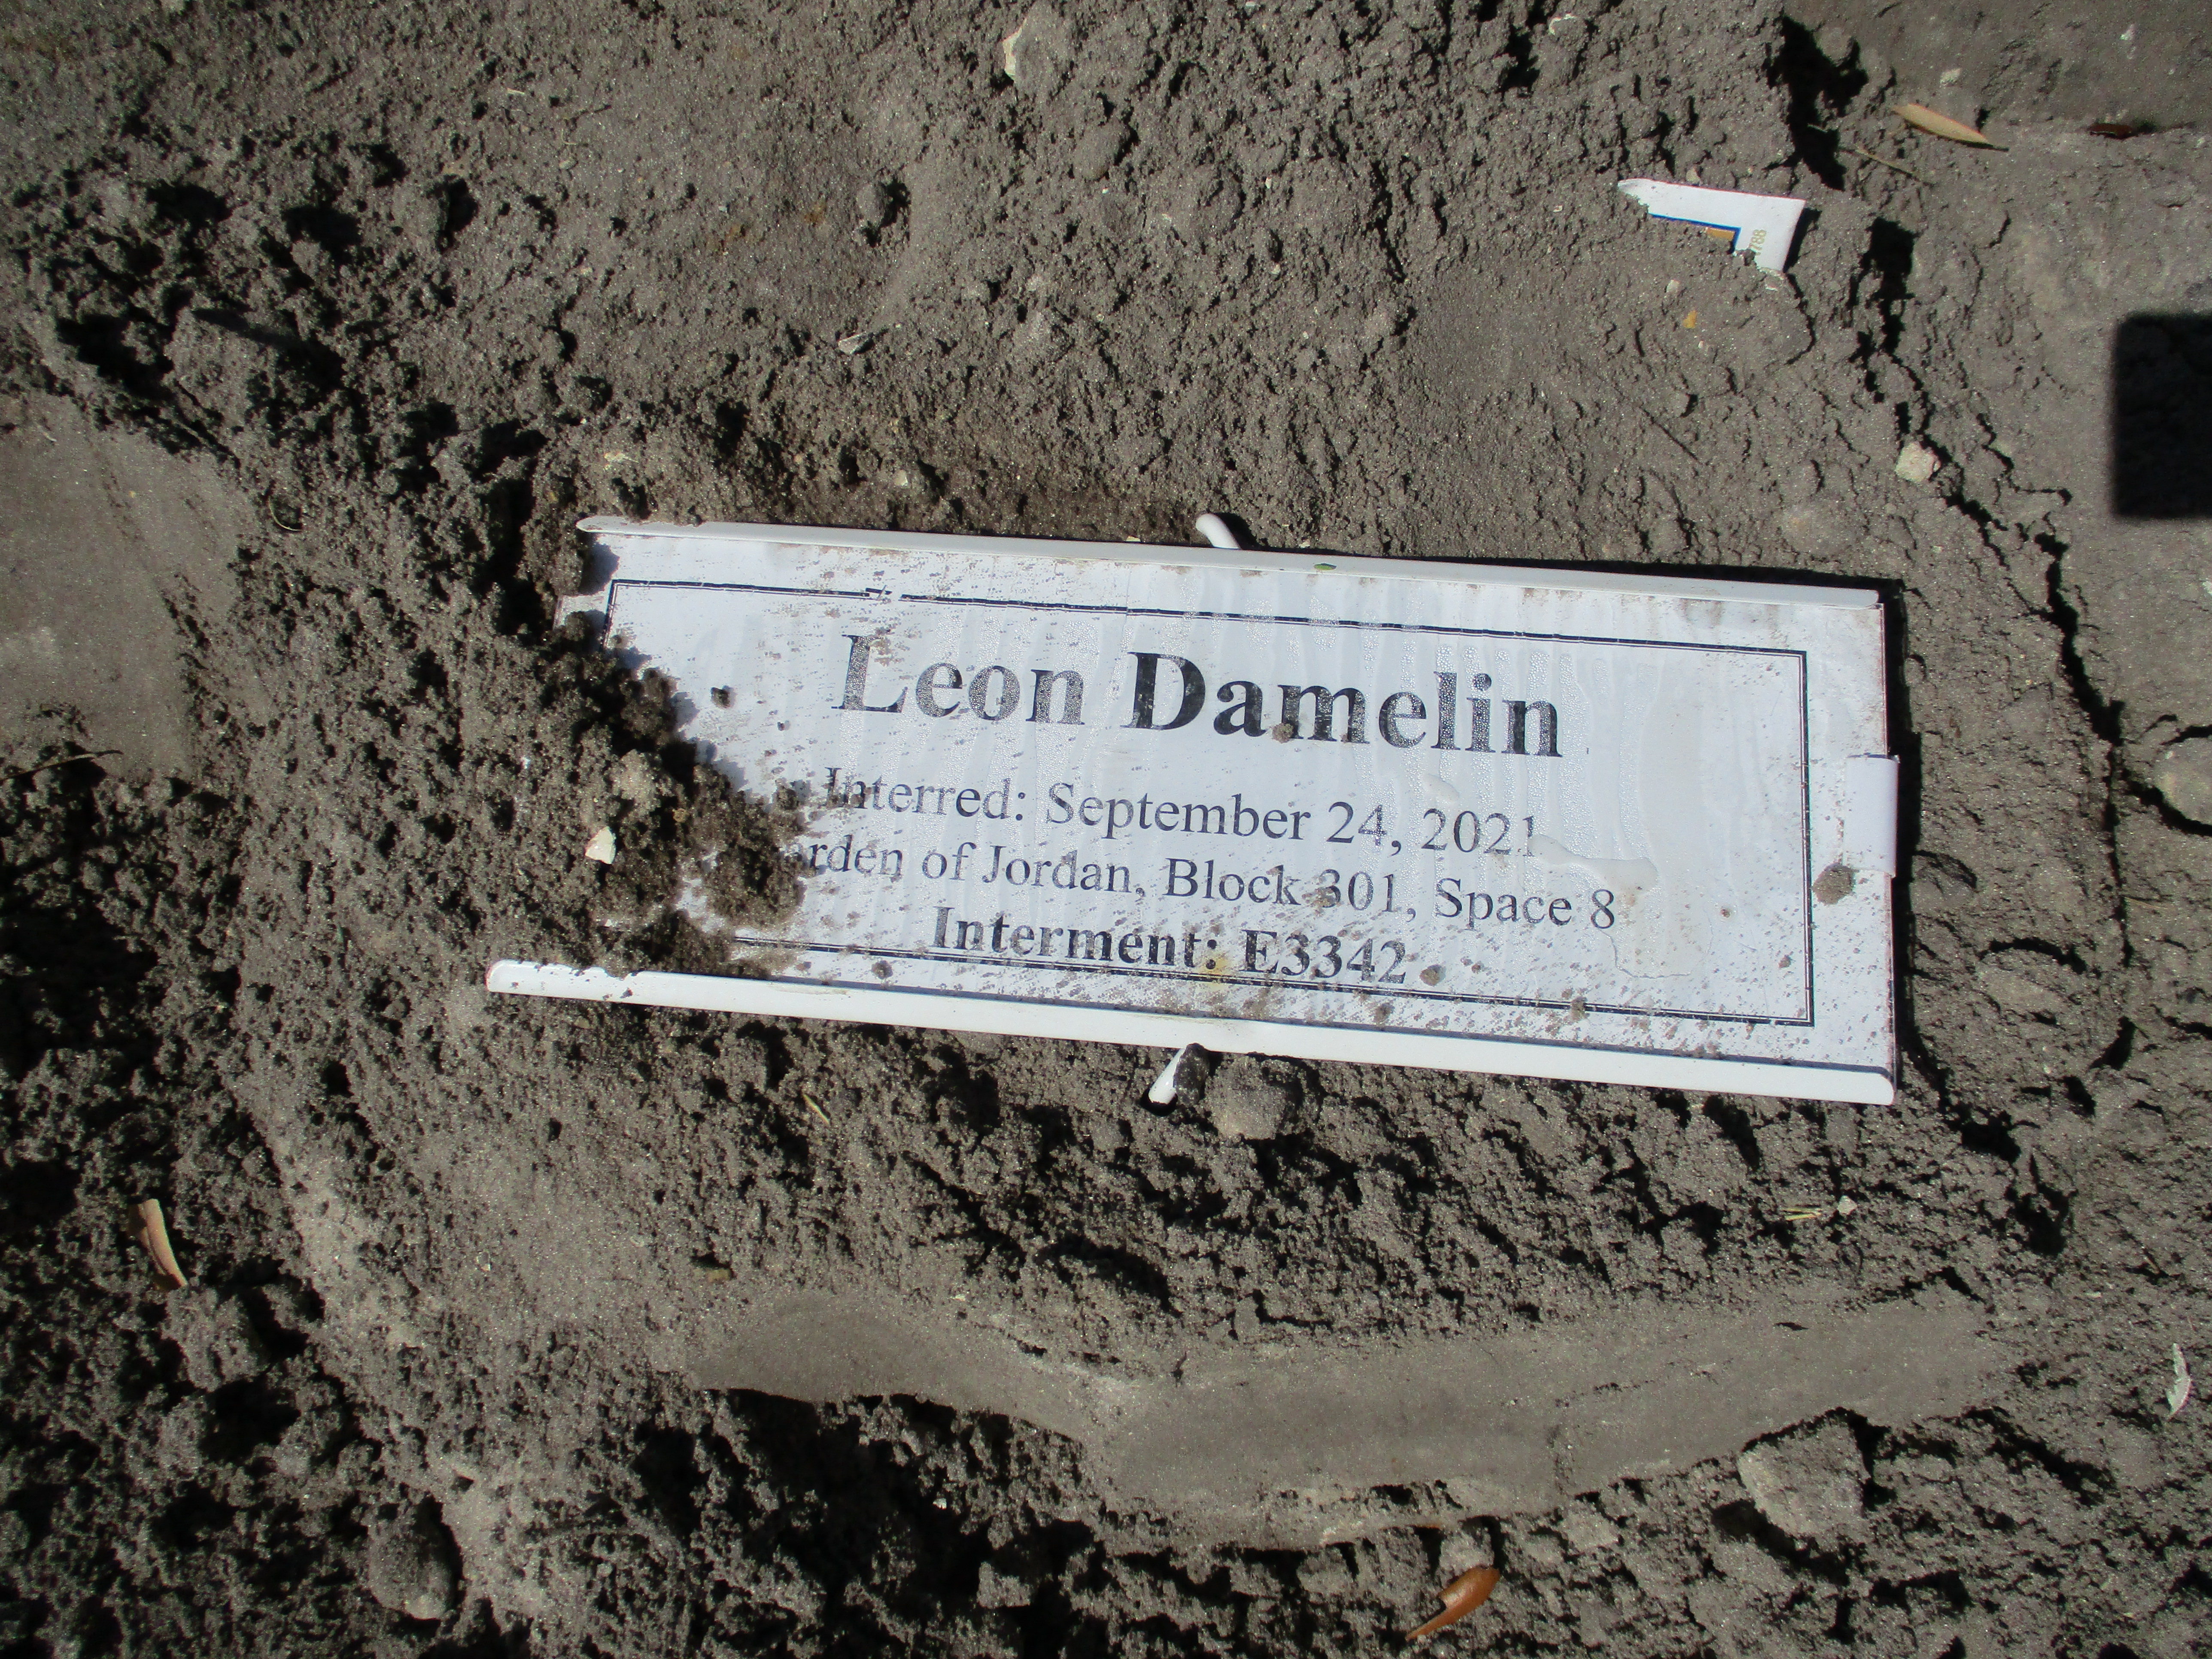 Leon Damelin